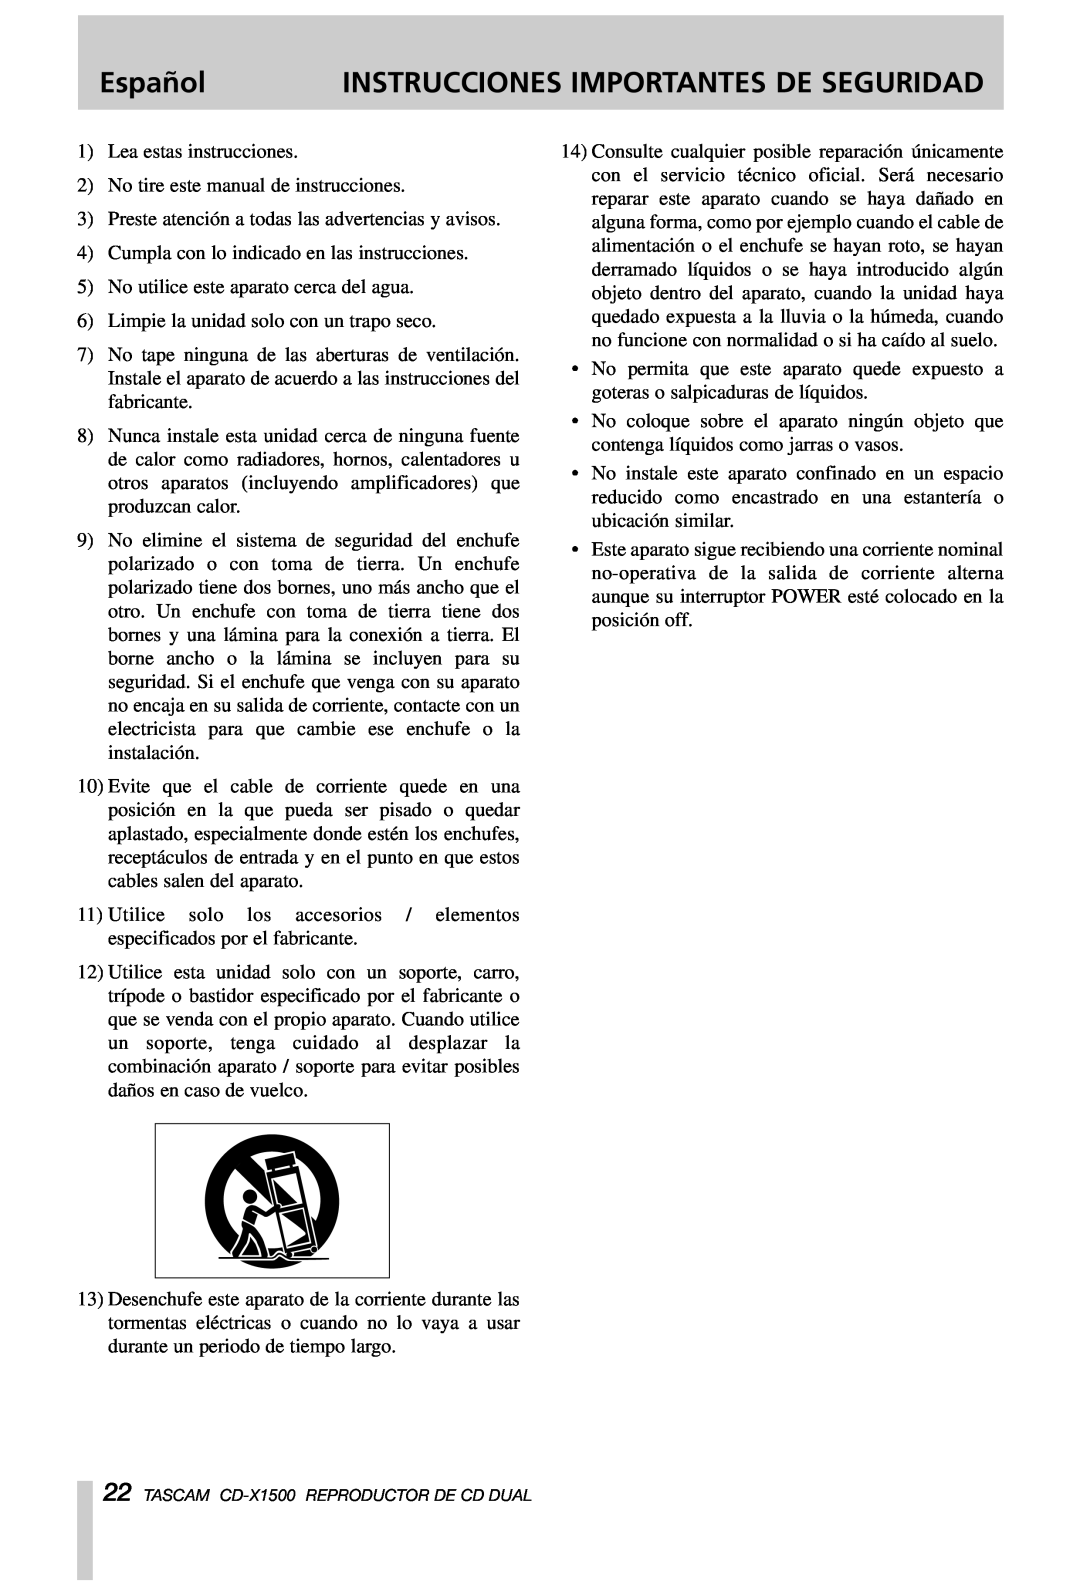 Tascam CD-X1500 owner manual Español, Instrucciones Importantes De Seguridad 